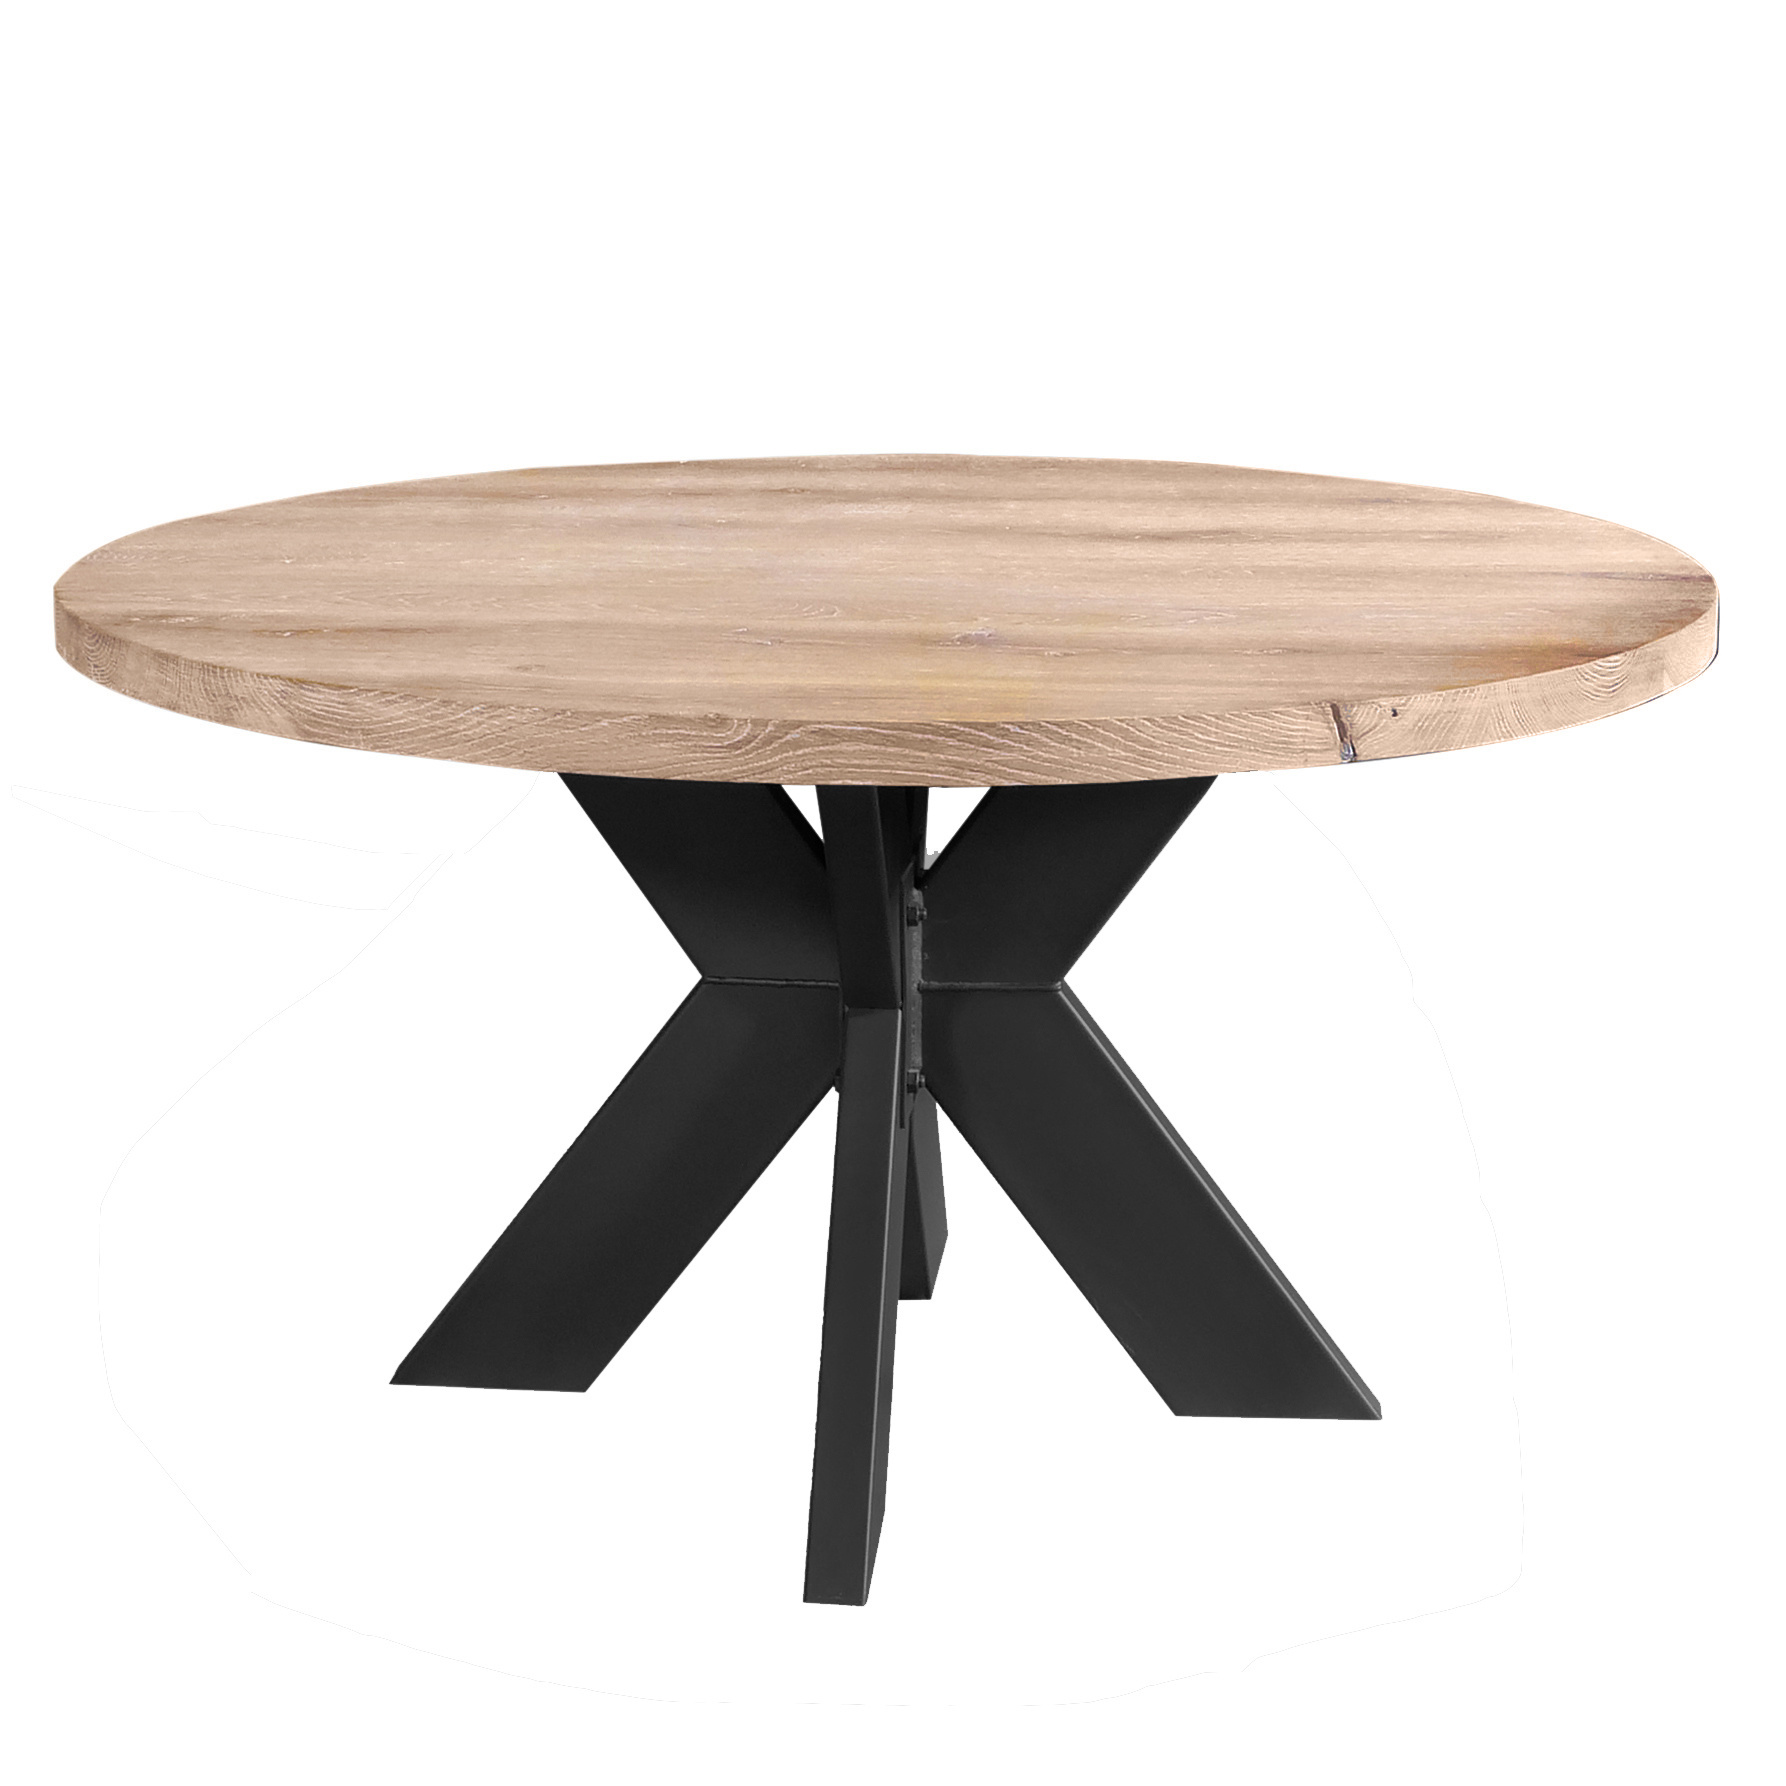  Eiken tafelblad rond - 4 cm dik (1-laag) - Diverse afmetingen - optioneel geborsteld - Rustiek Europees eikenhout - met brede lamellen (circa 10-12 cm) - verlijmd kd 10-12%